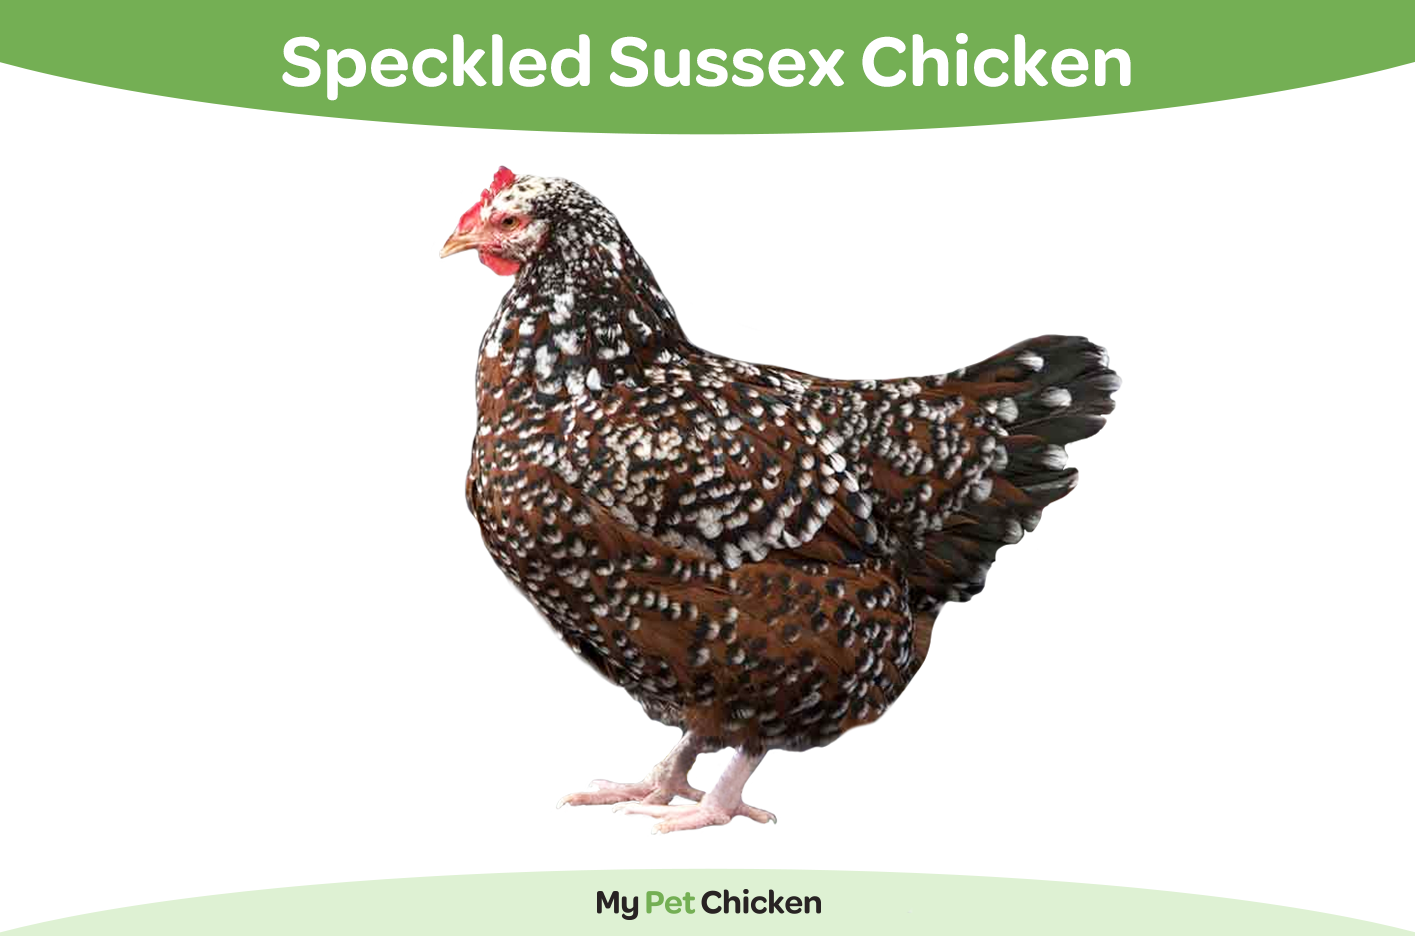 Speckled Sussex chicken